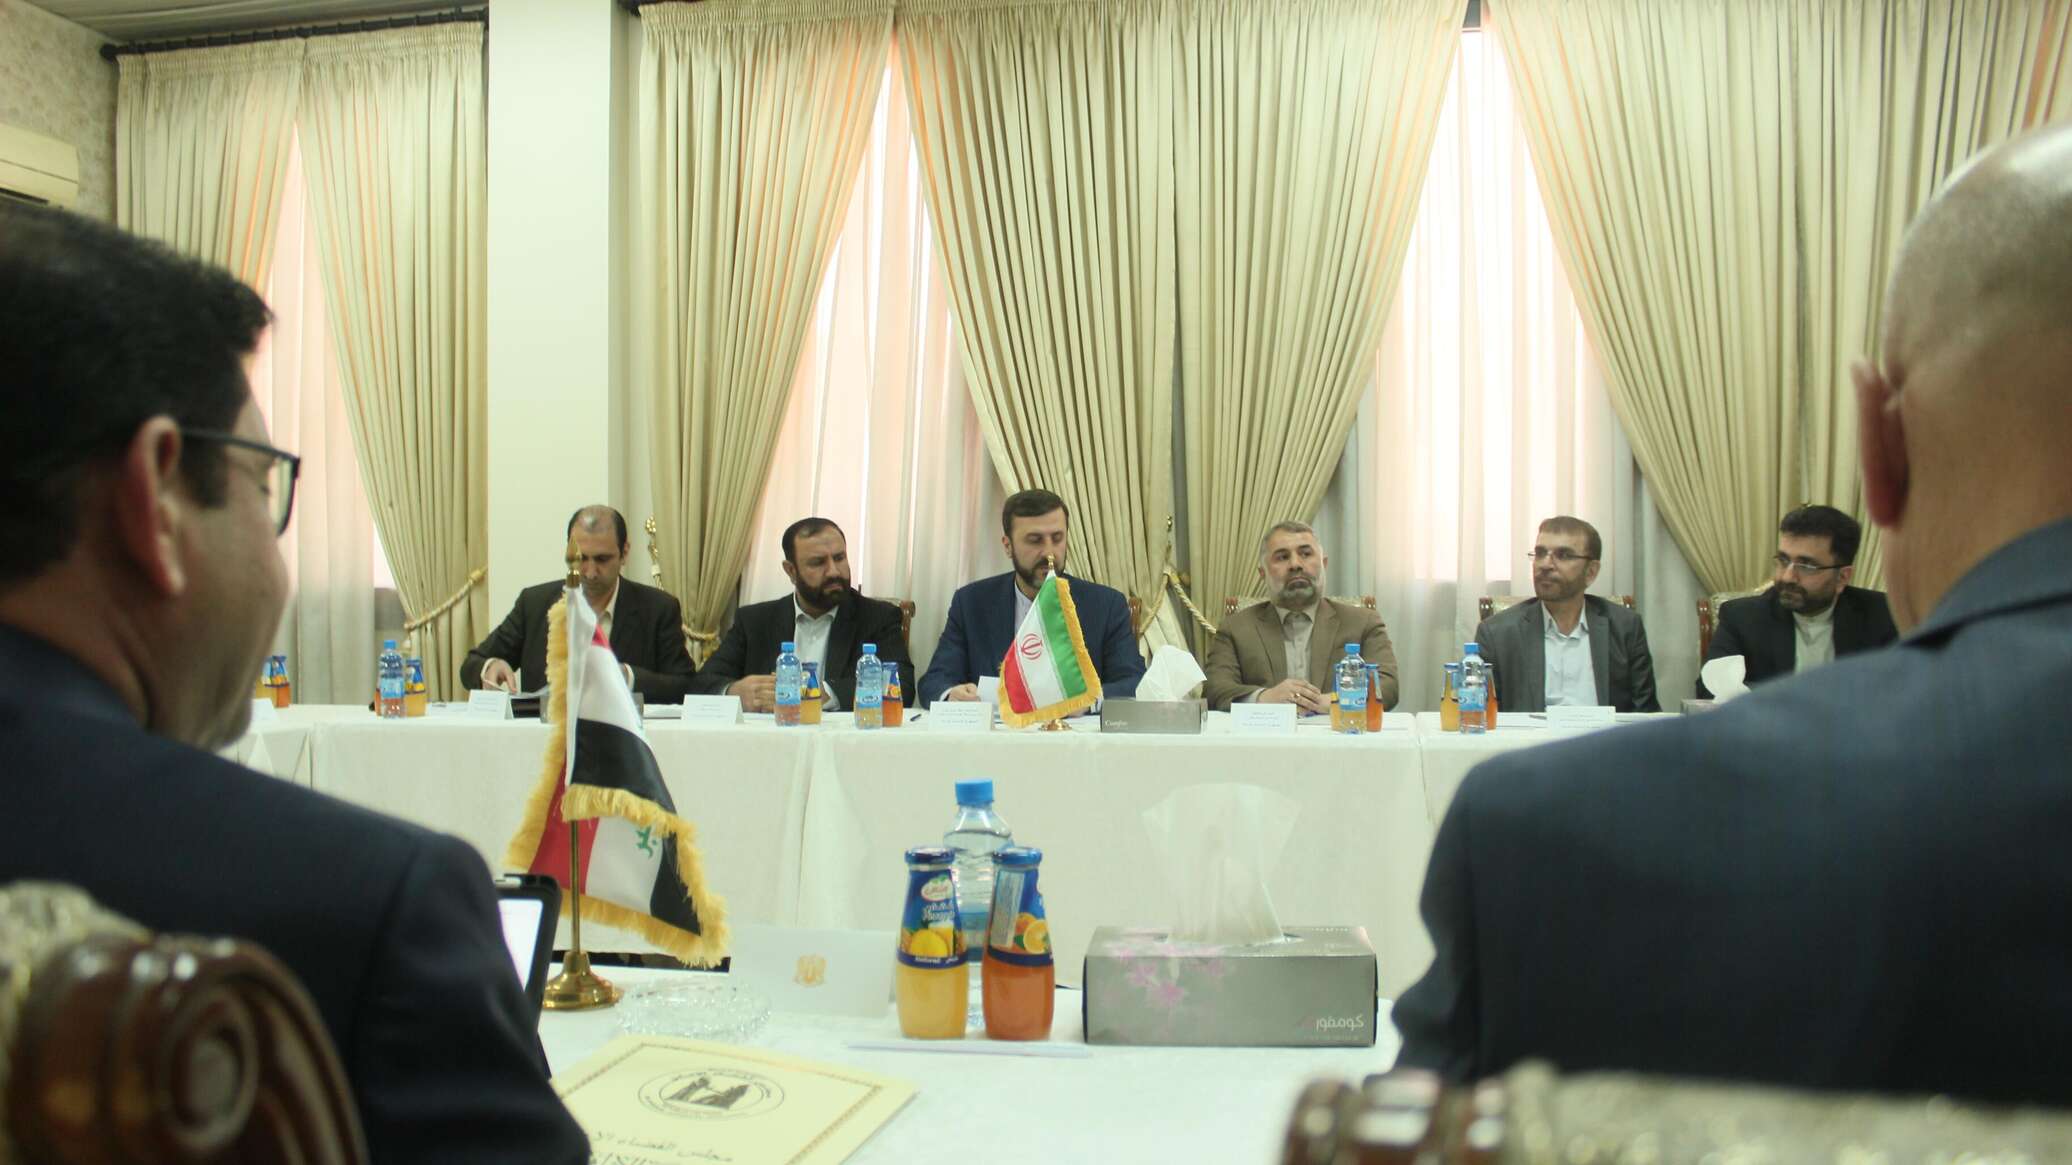 لجنة سورية عراقية إيرانية تسعى لإصدار مذكرات ادعاء بحق "الإرهاب الأمريكي والإسرائيلي"